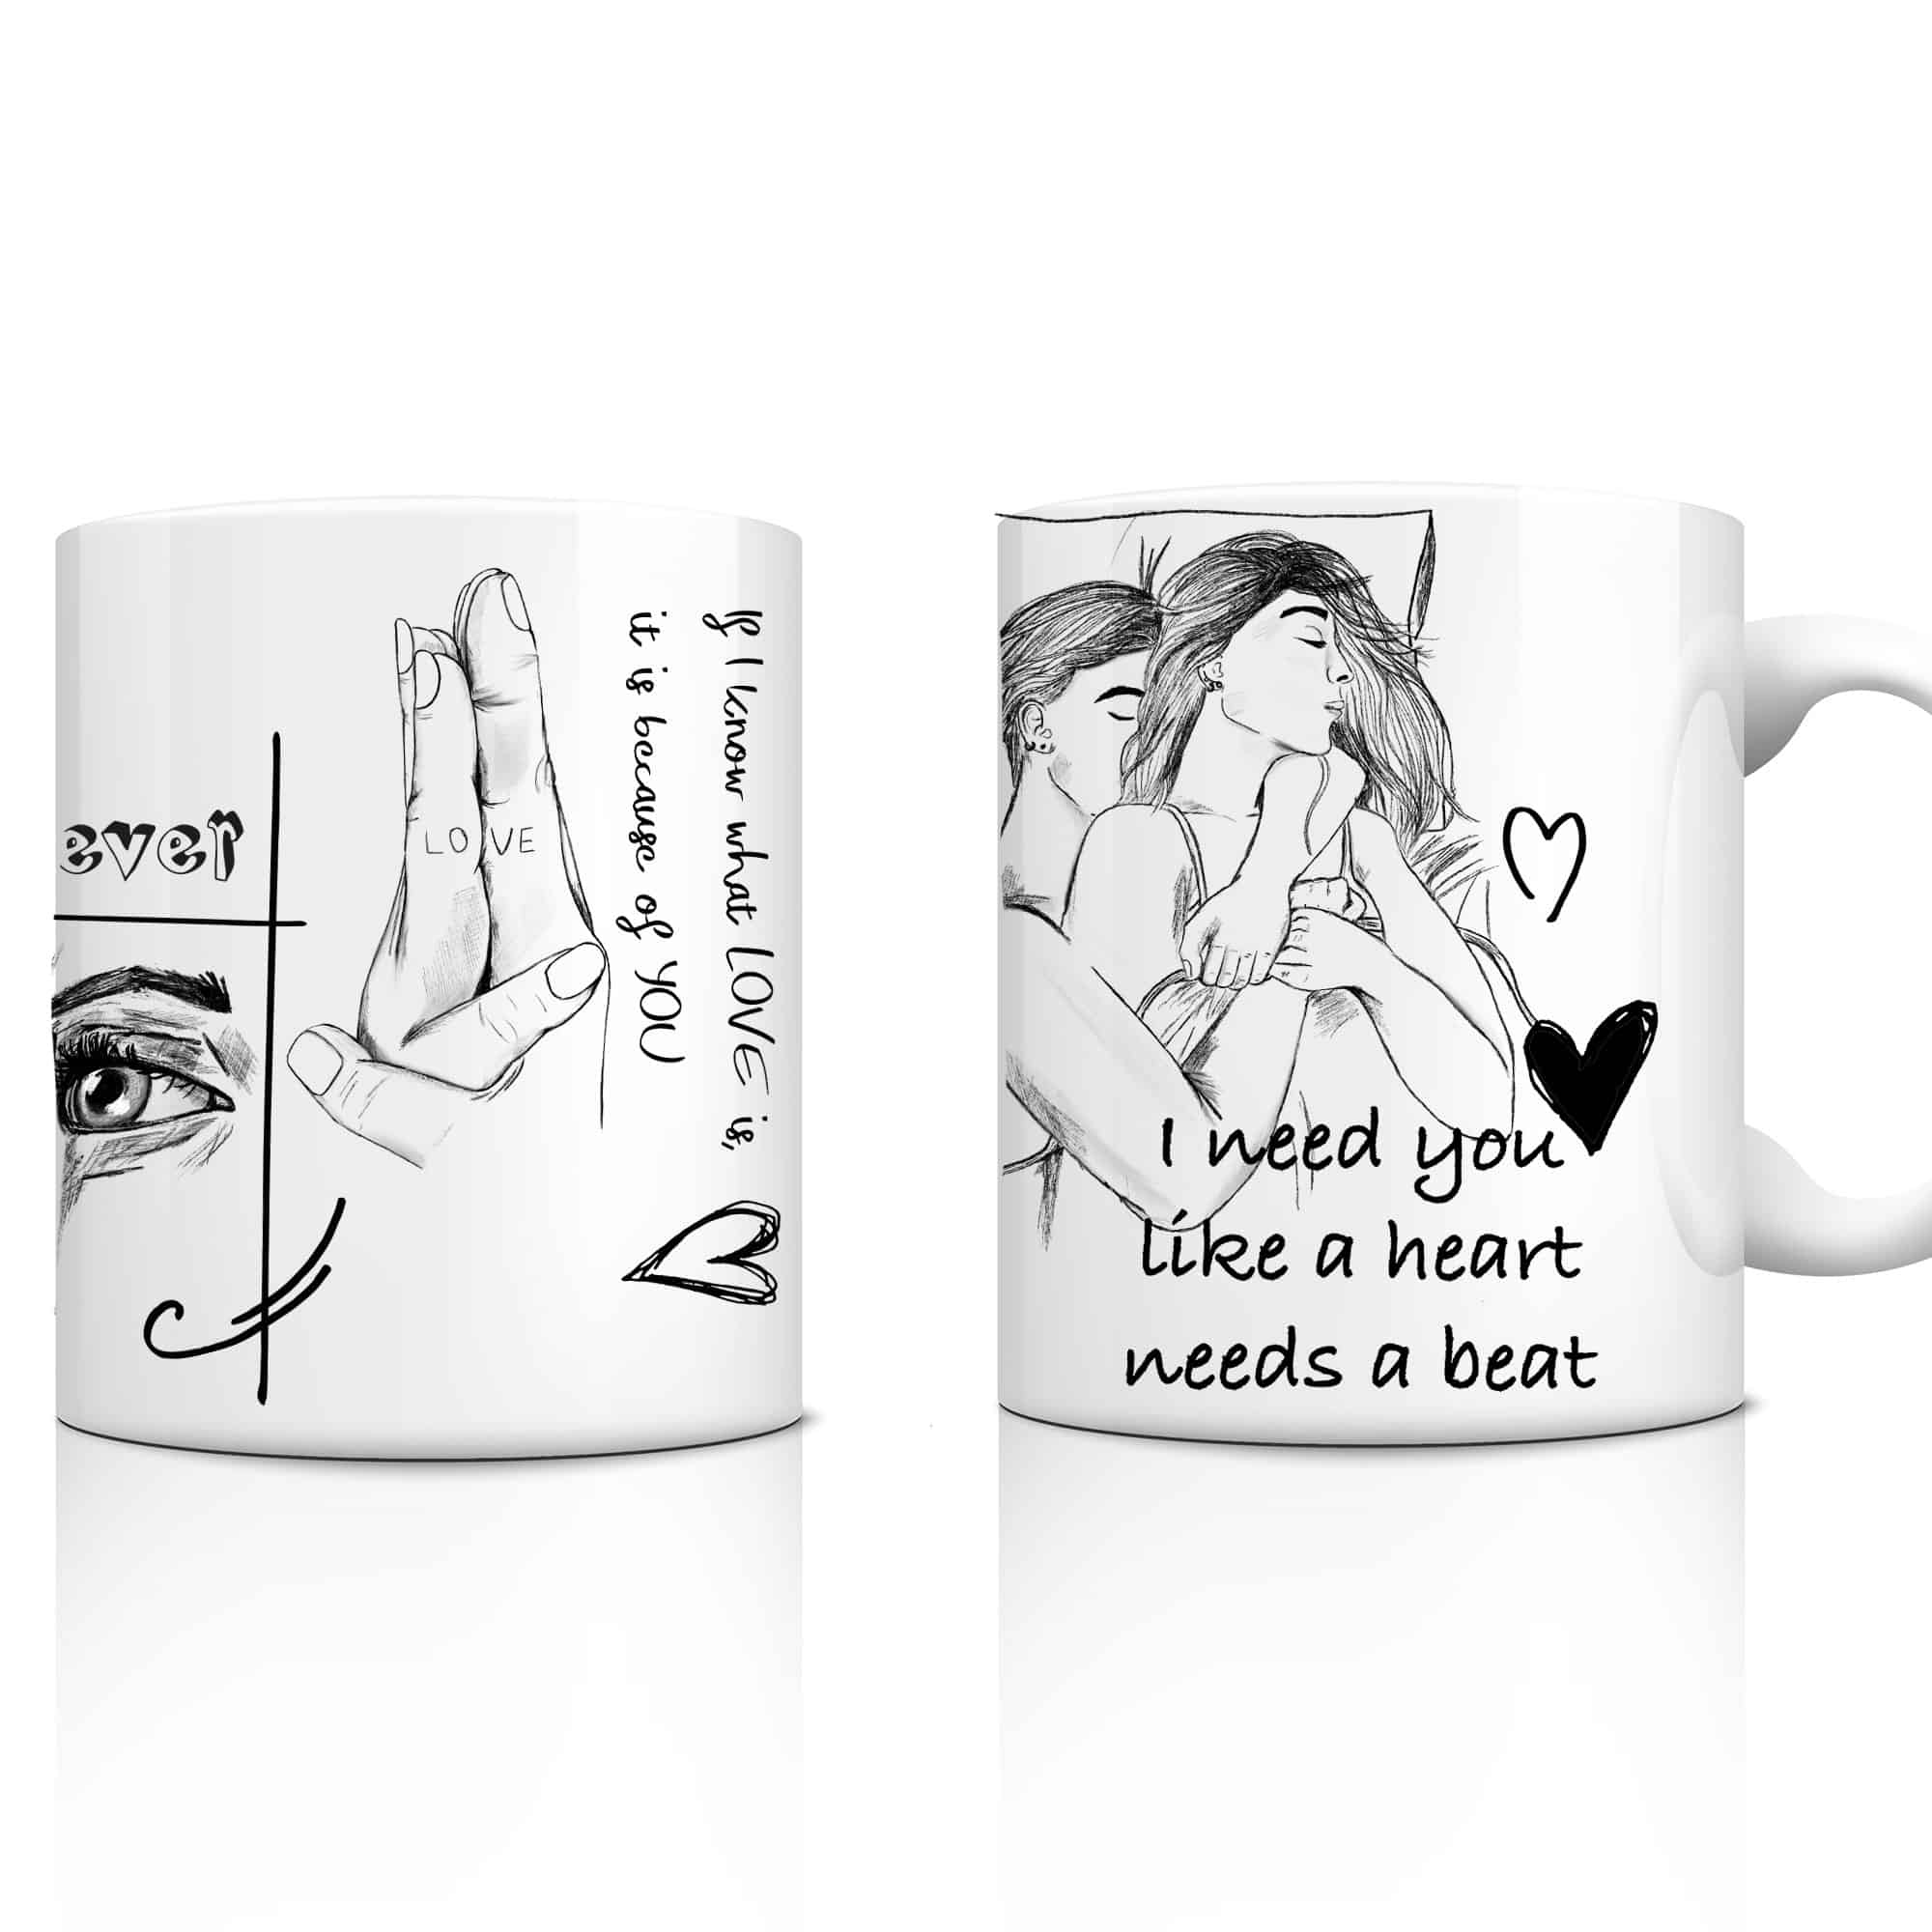 Tasse für Freund oder Freundin LOVE im Sketchbook Design, schönes Geschenk zum Valentinstag für ihn oder sie